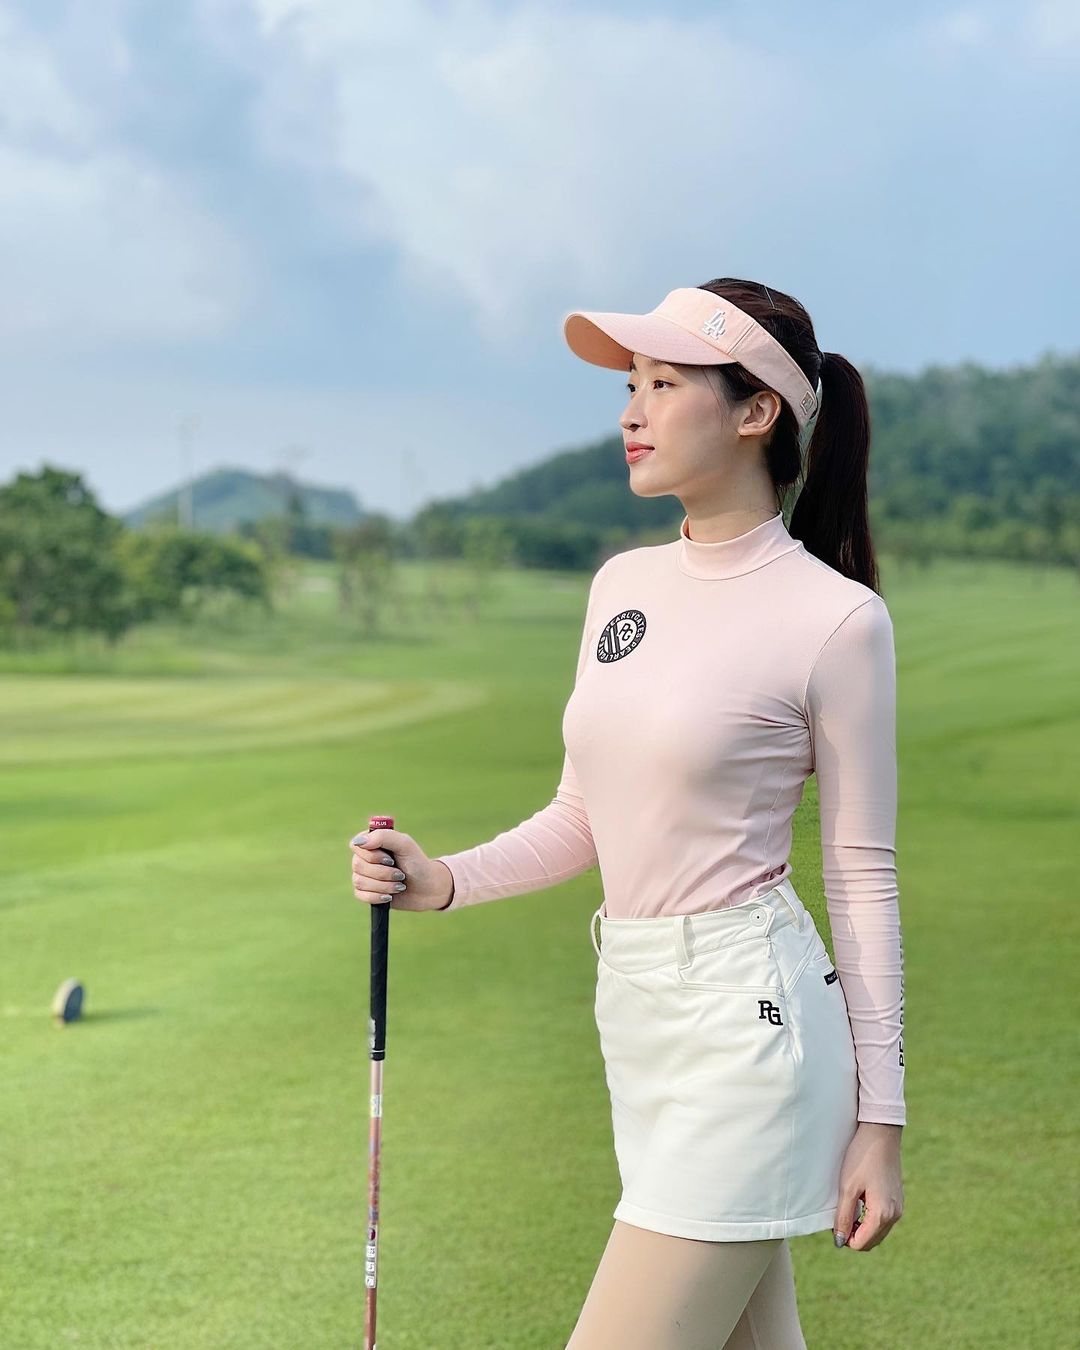 Hoa hậu Mỹ Linh chia sẻ hình ảnh được Hoa hậu Ngọc Hân chụp khi đi tập golf cùng nhau. Cô than thở: 'Cứ lên sân được vài hôm lại dịch đóng cửa bảo sao mình cứ mãi gà'.